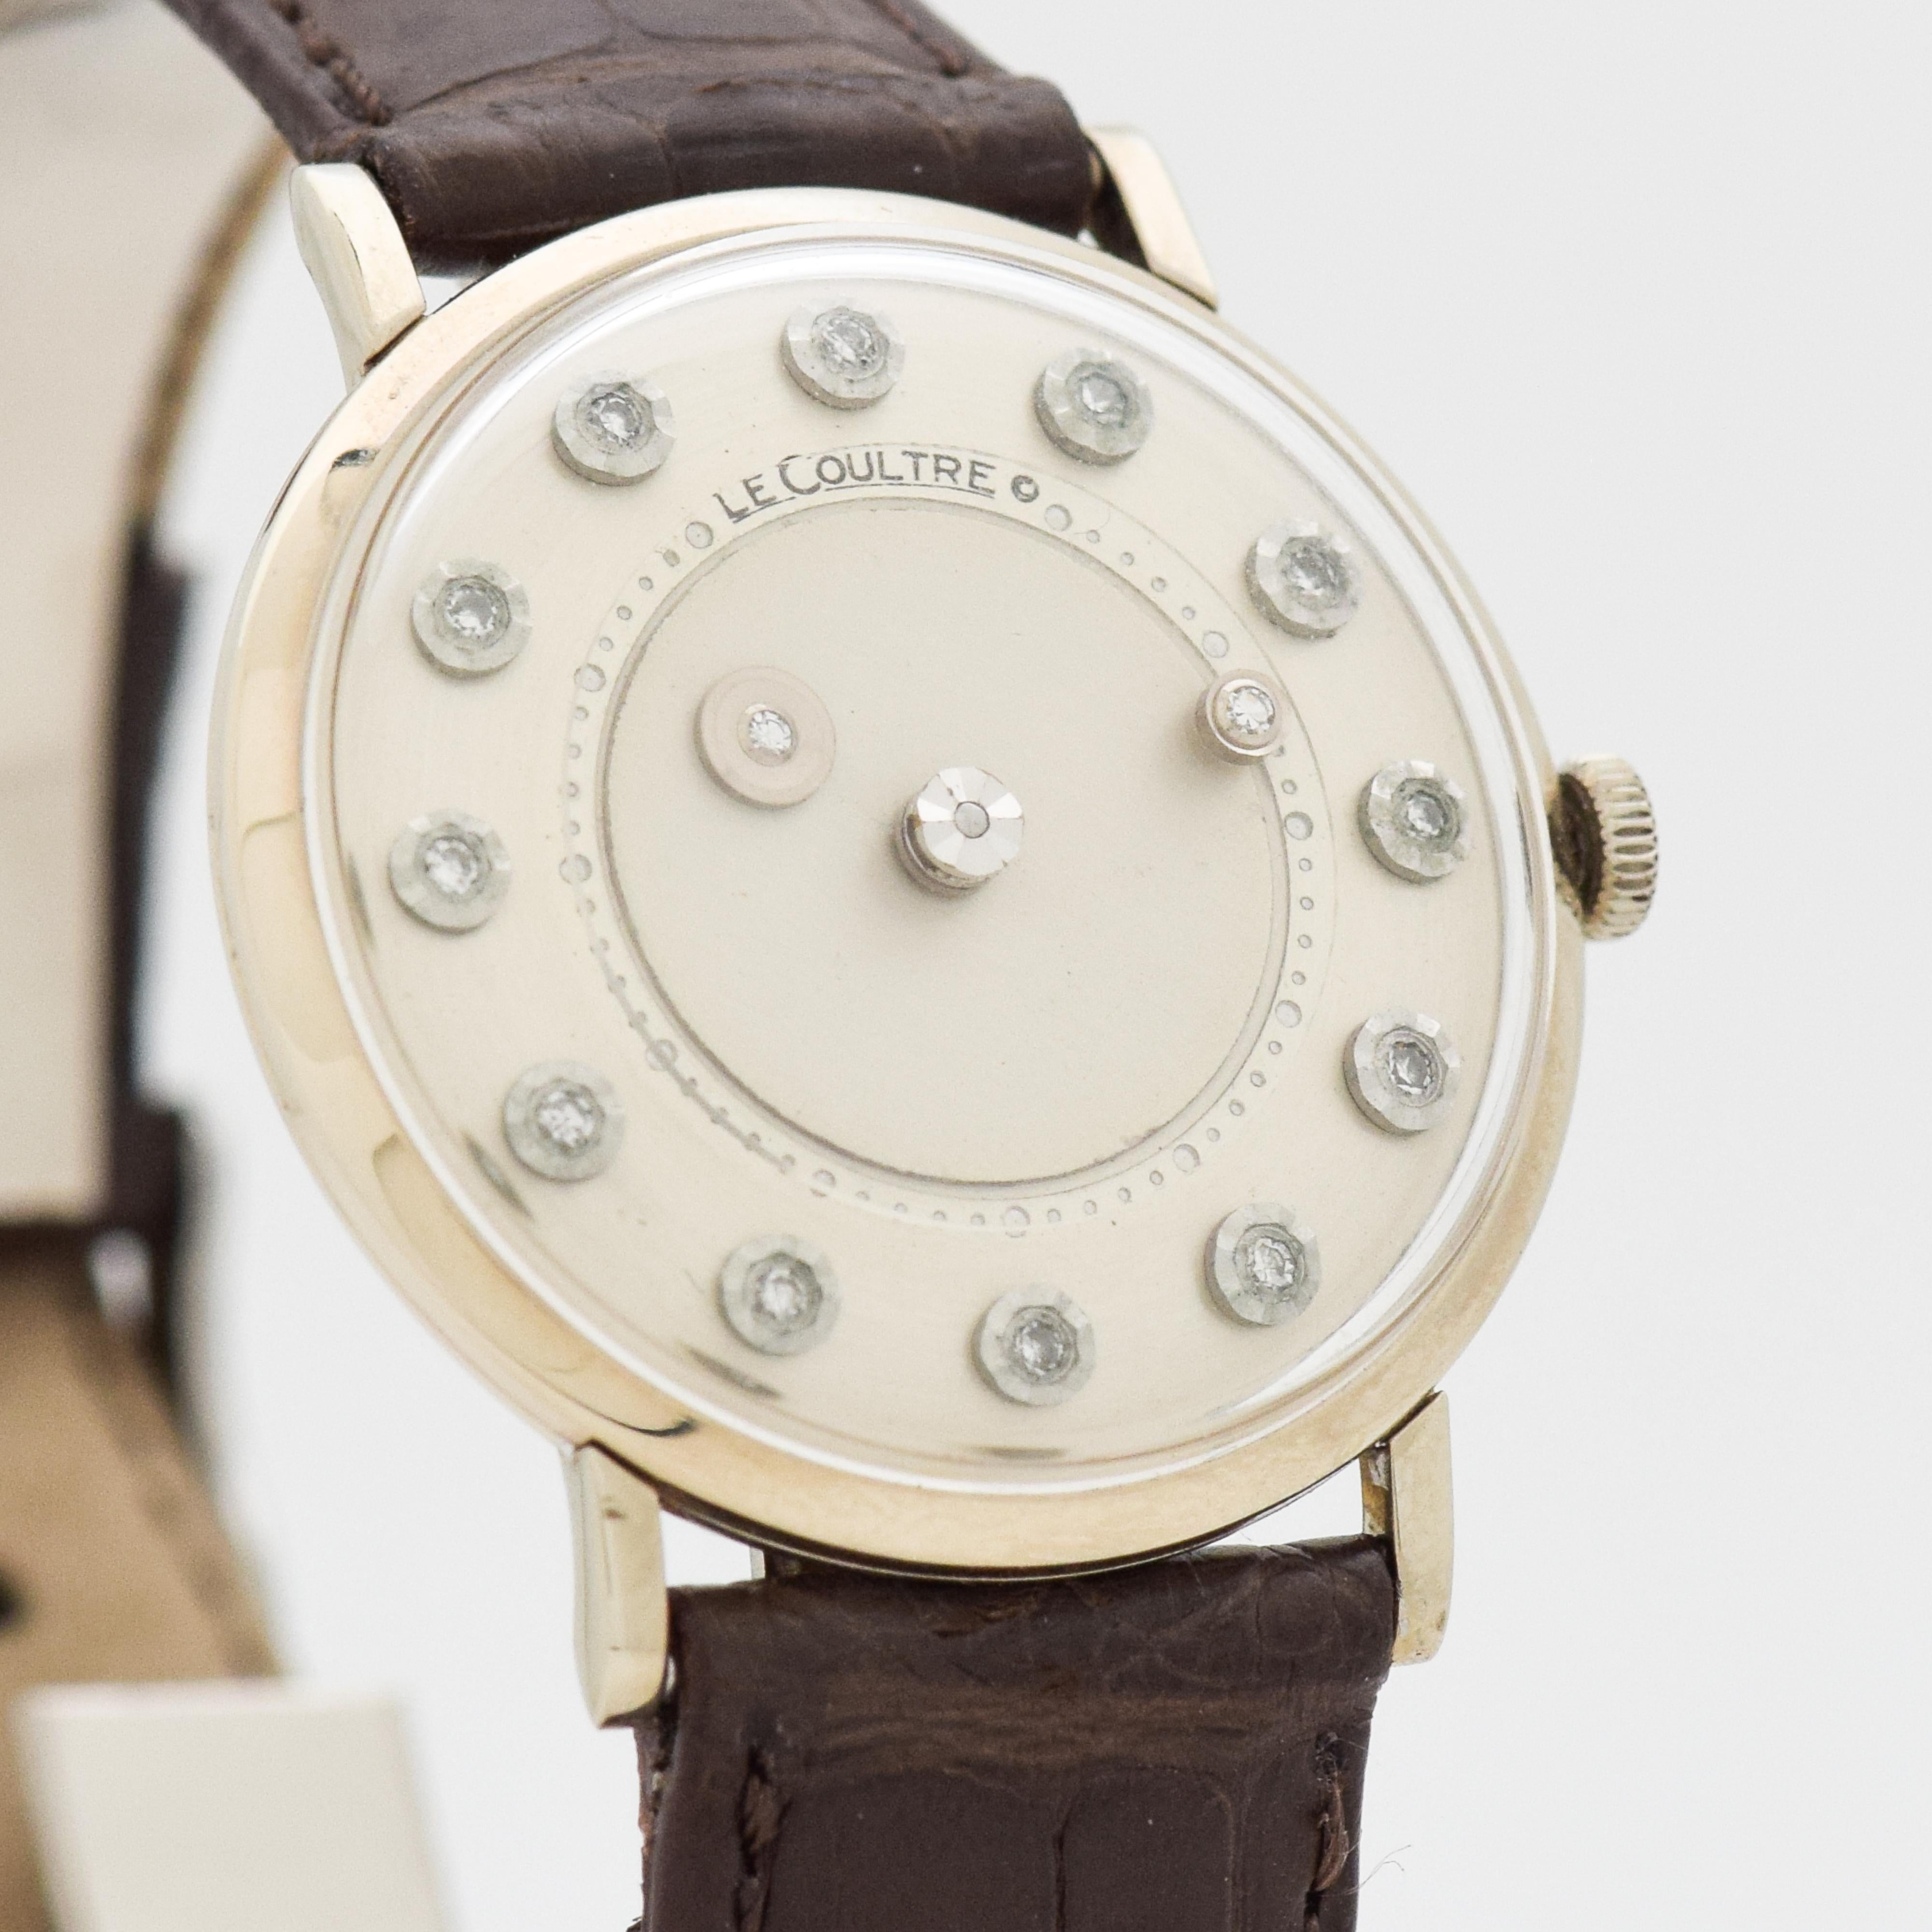 1960's Vintage Jaeger - Le Coultre 14kt White Gold Mystery Dial Uhr mit Silber Satin-Zifferblatt mit runden Diamantmarkern. 32mm x 36mm Stollen zu Stollen (1,26 in. x 1,42 in.) - 17 Juwelen, manuelle Kaliber Bewegung. Ausgestattet mit einem 100%